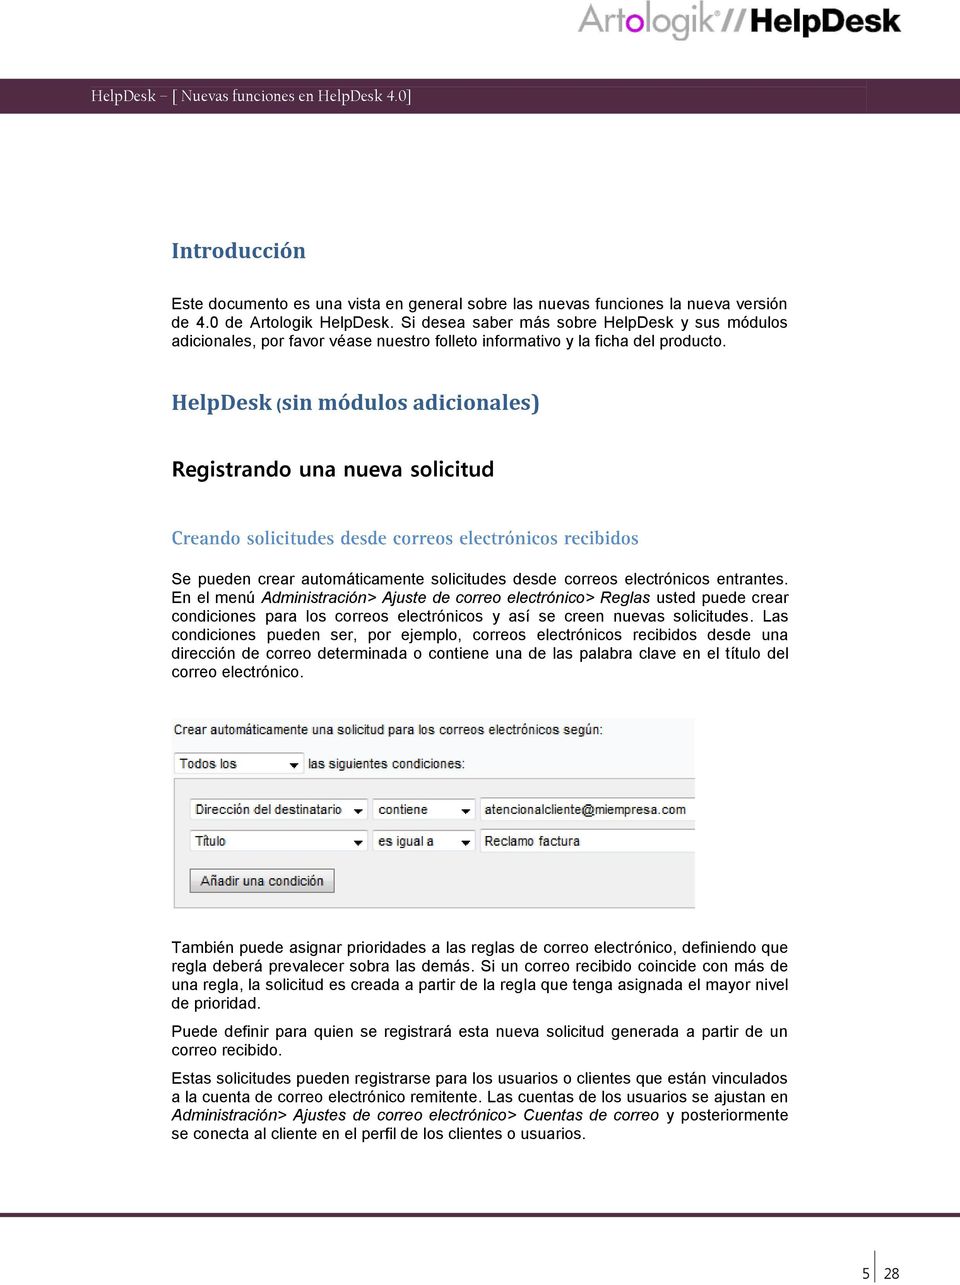 HelpDesk (sin módulos adicionales) Registrando una nueva solicitud Se pueden crear automáticamente solicitudes desde correos electrónicos entrantes.